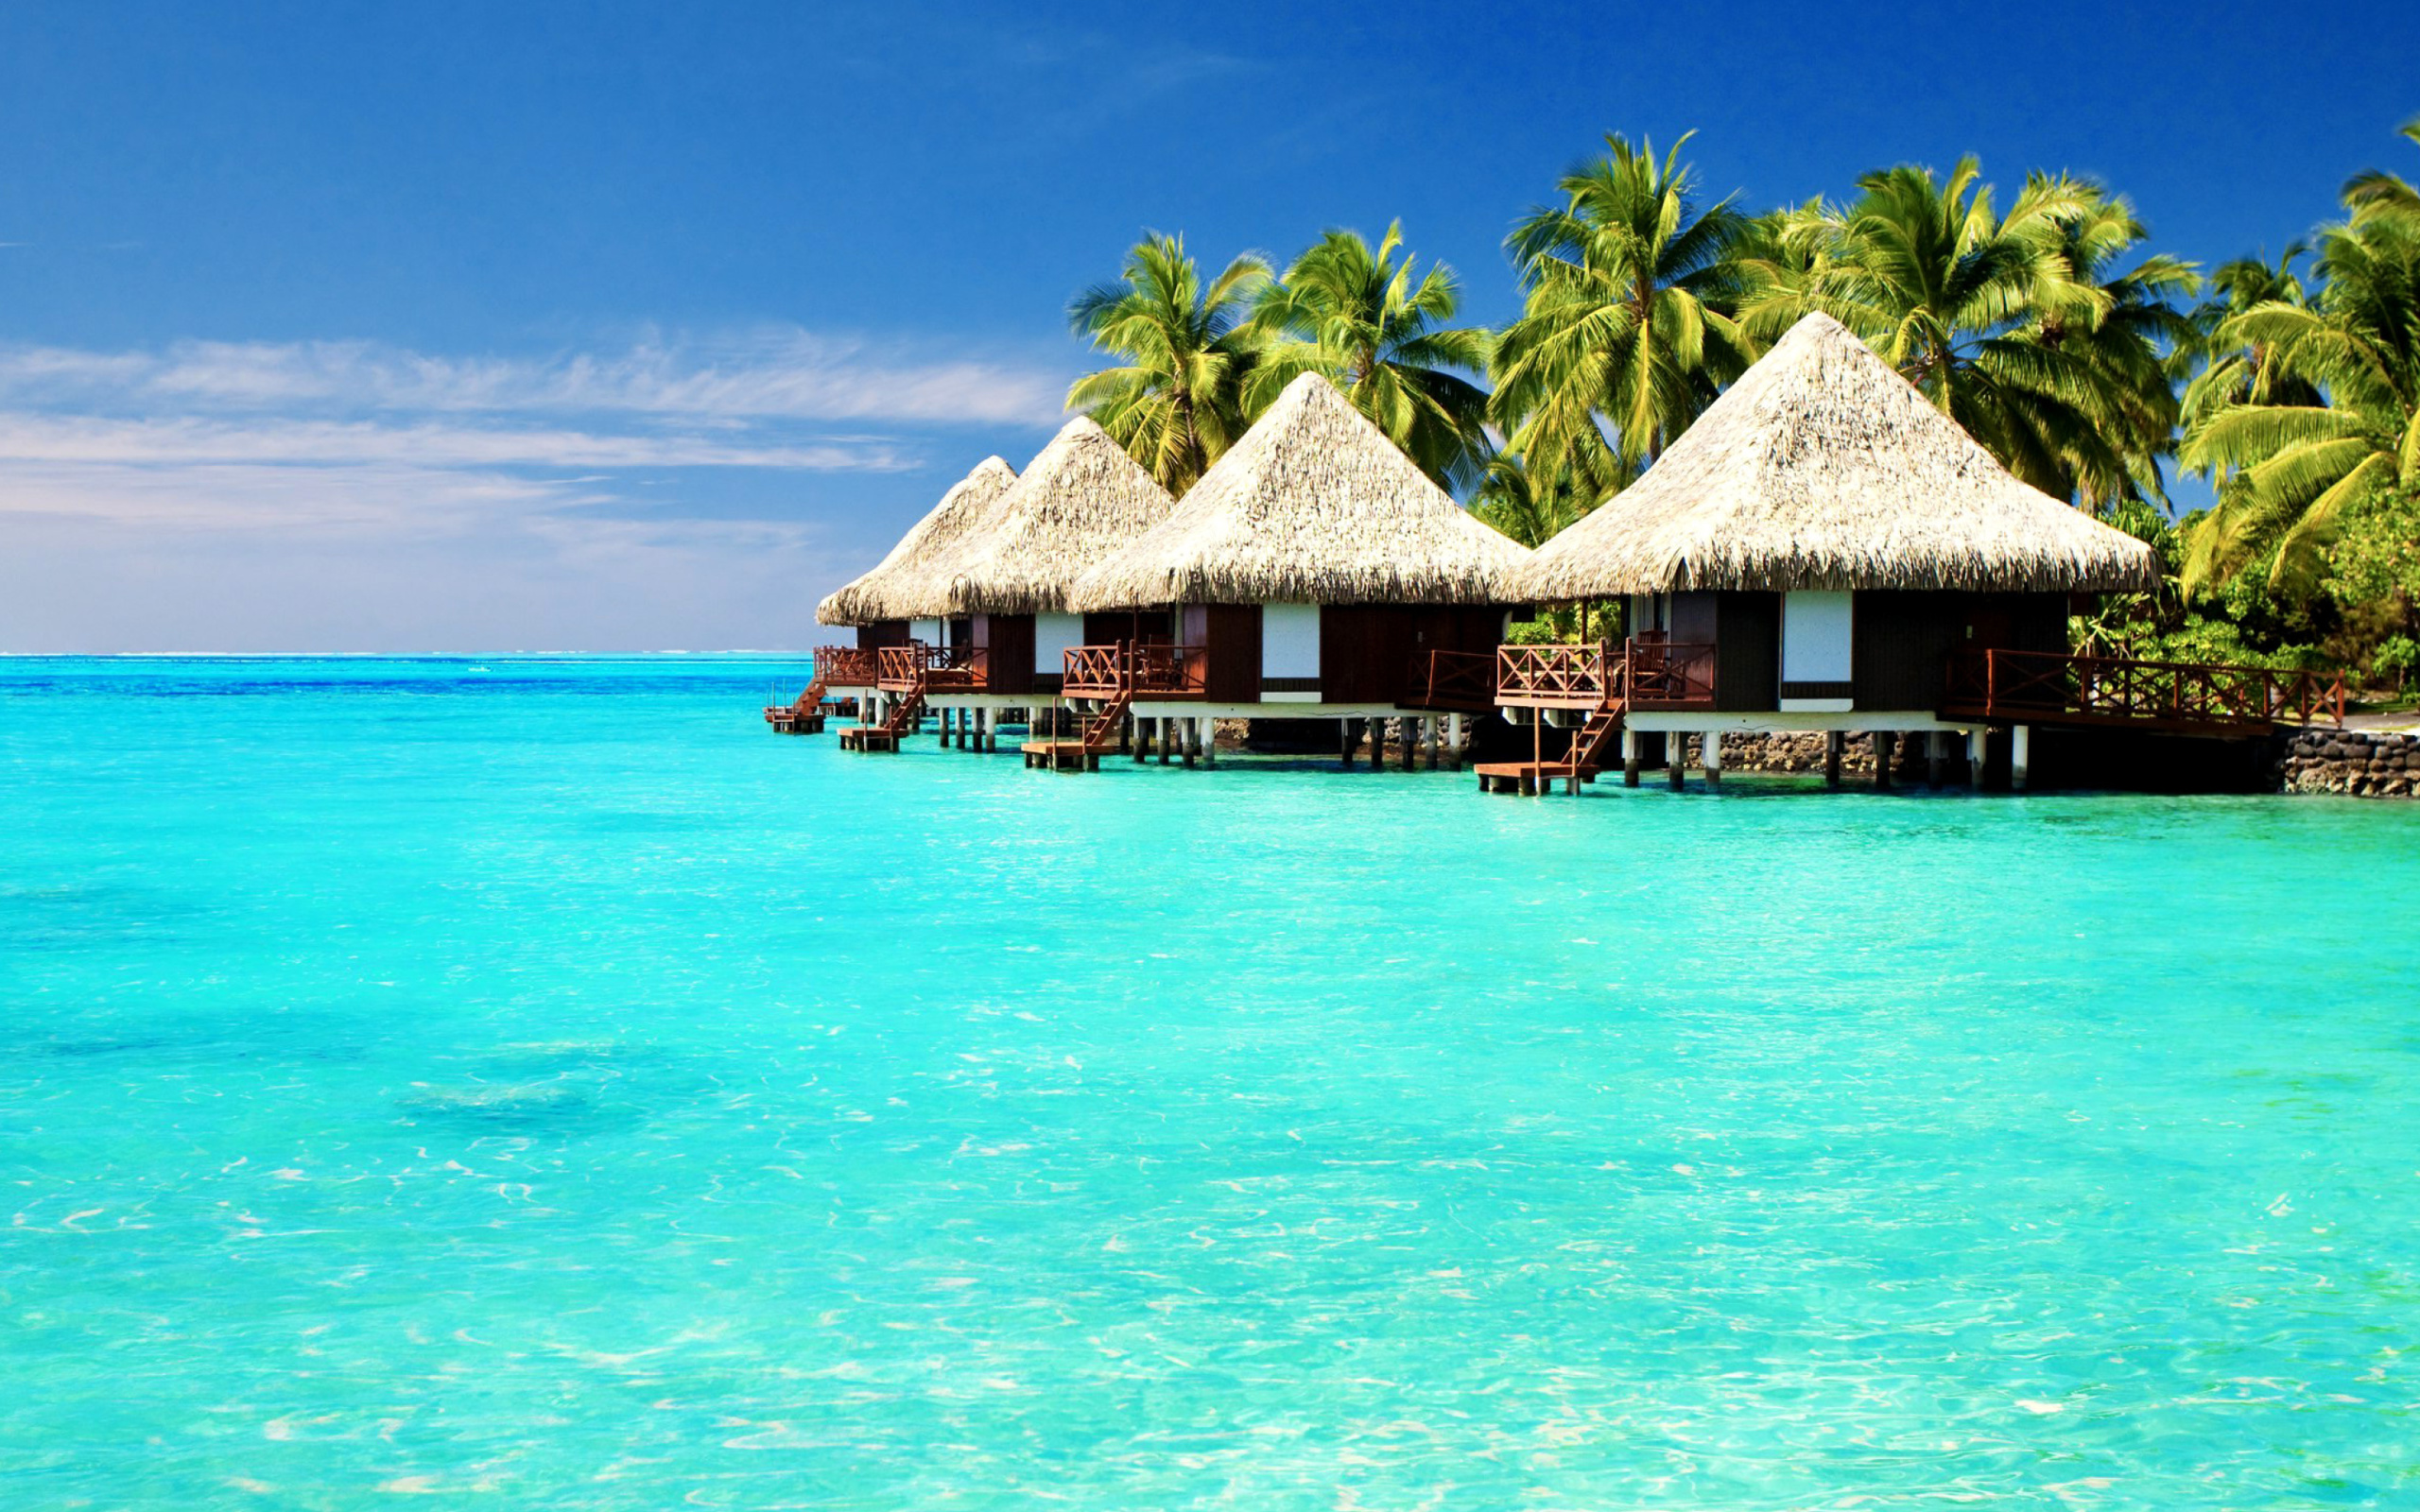 Maldives Islands best Destination for Honeymoon screenshot #1 2560x1600